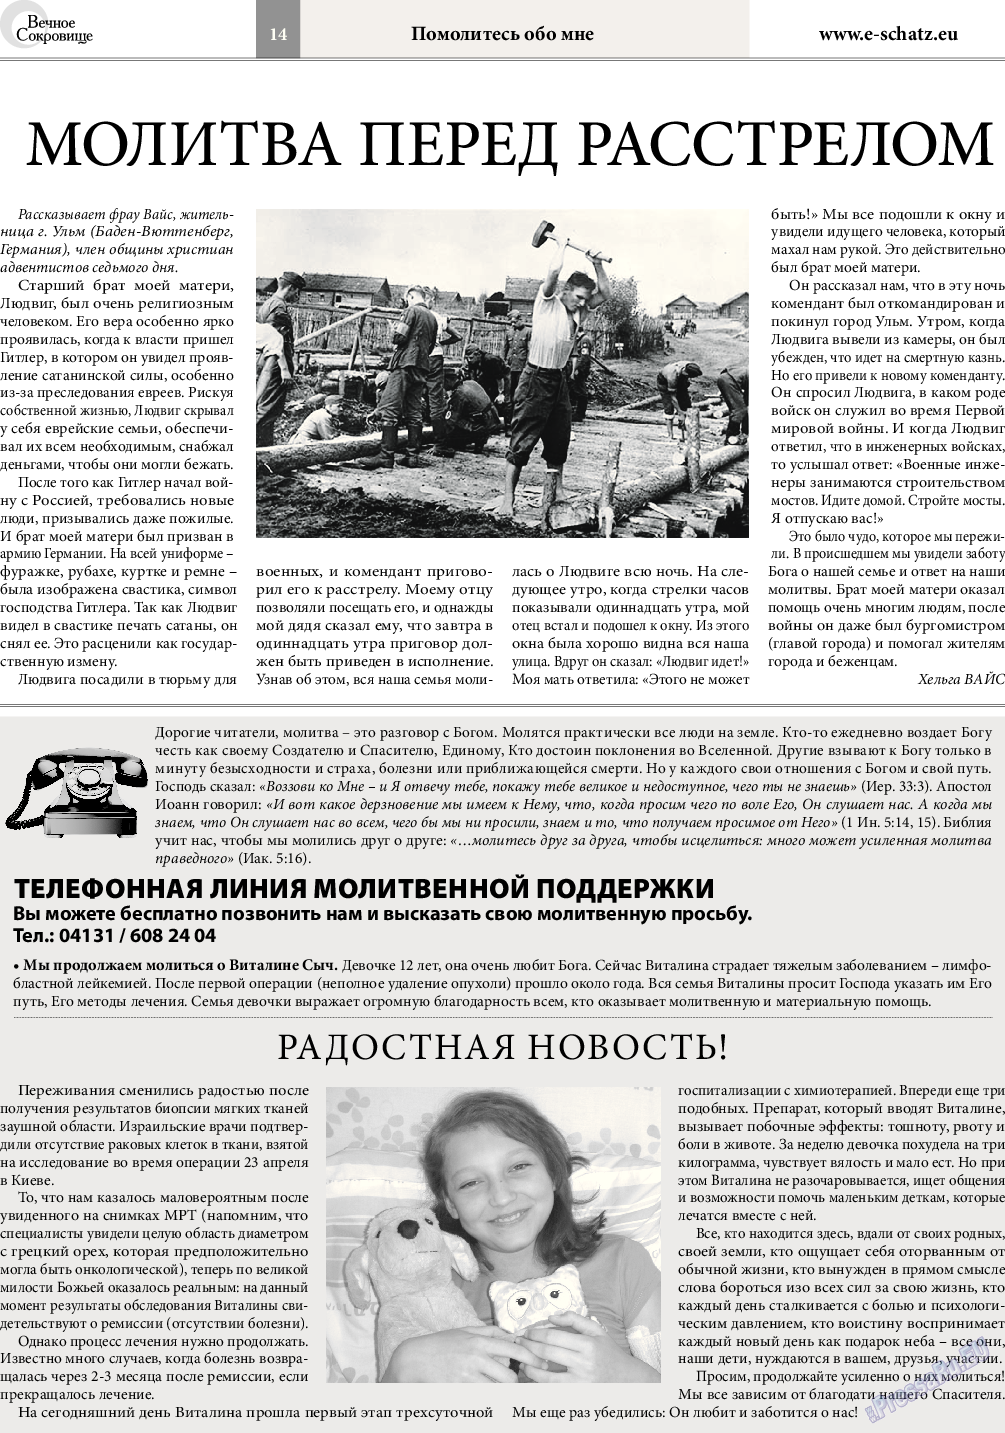 Вечное сокровище, газета. 2015 №3 стр.14